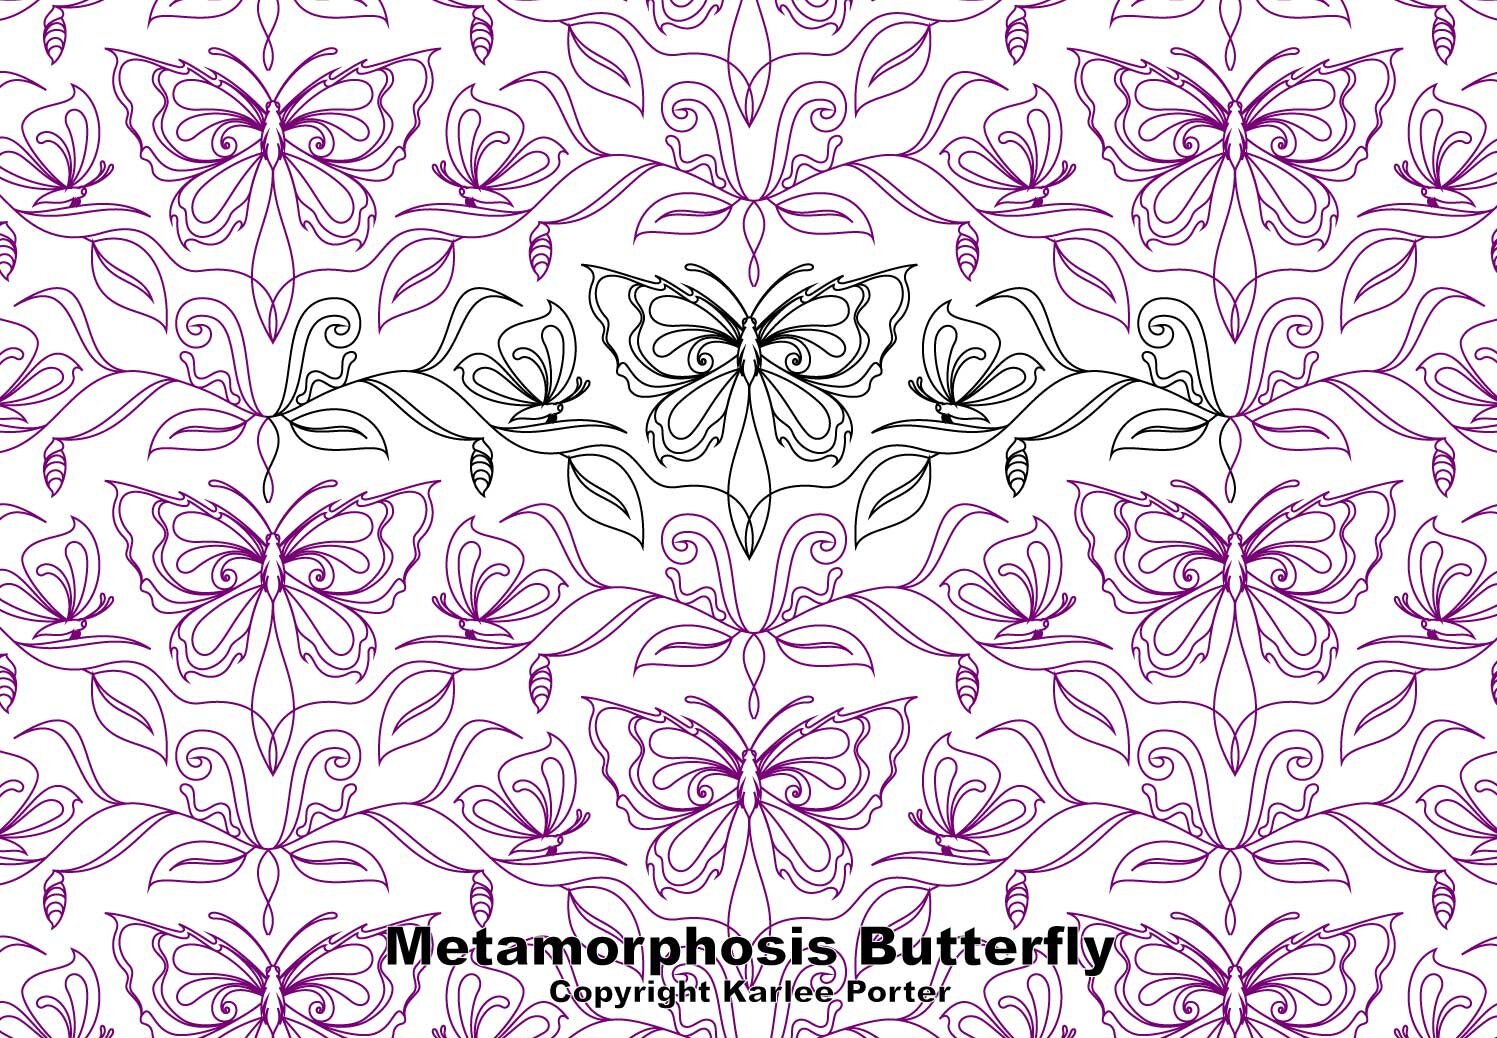 Metamorphosis Butterfly